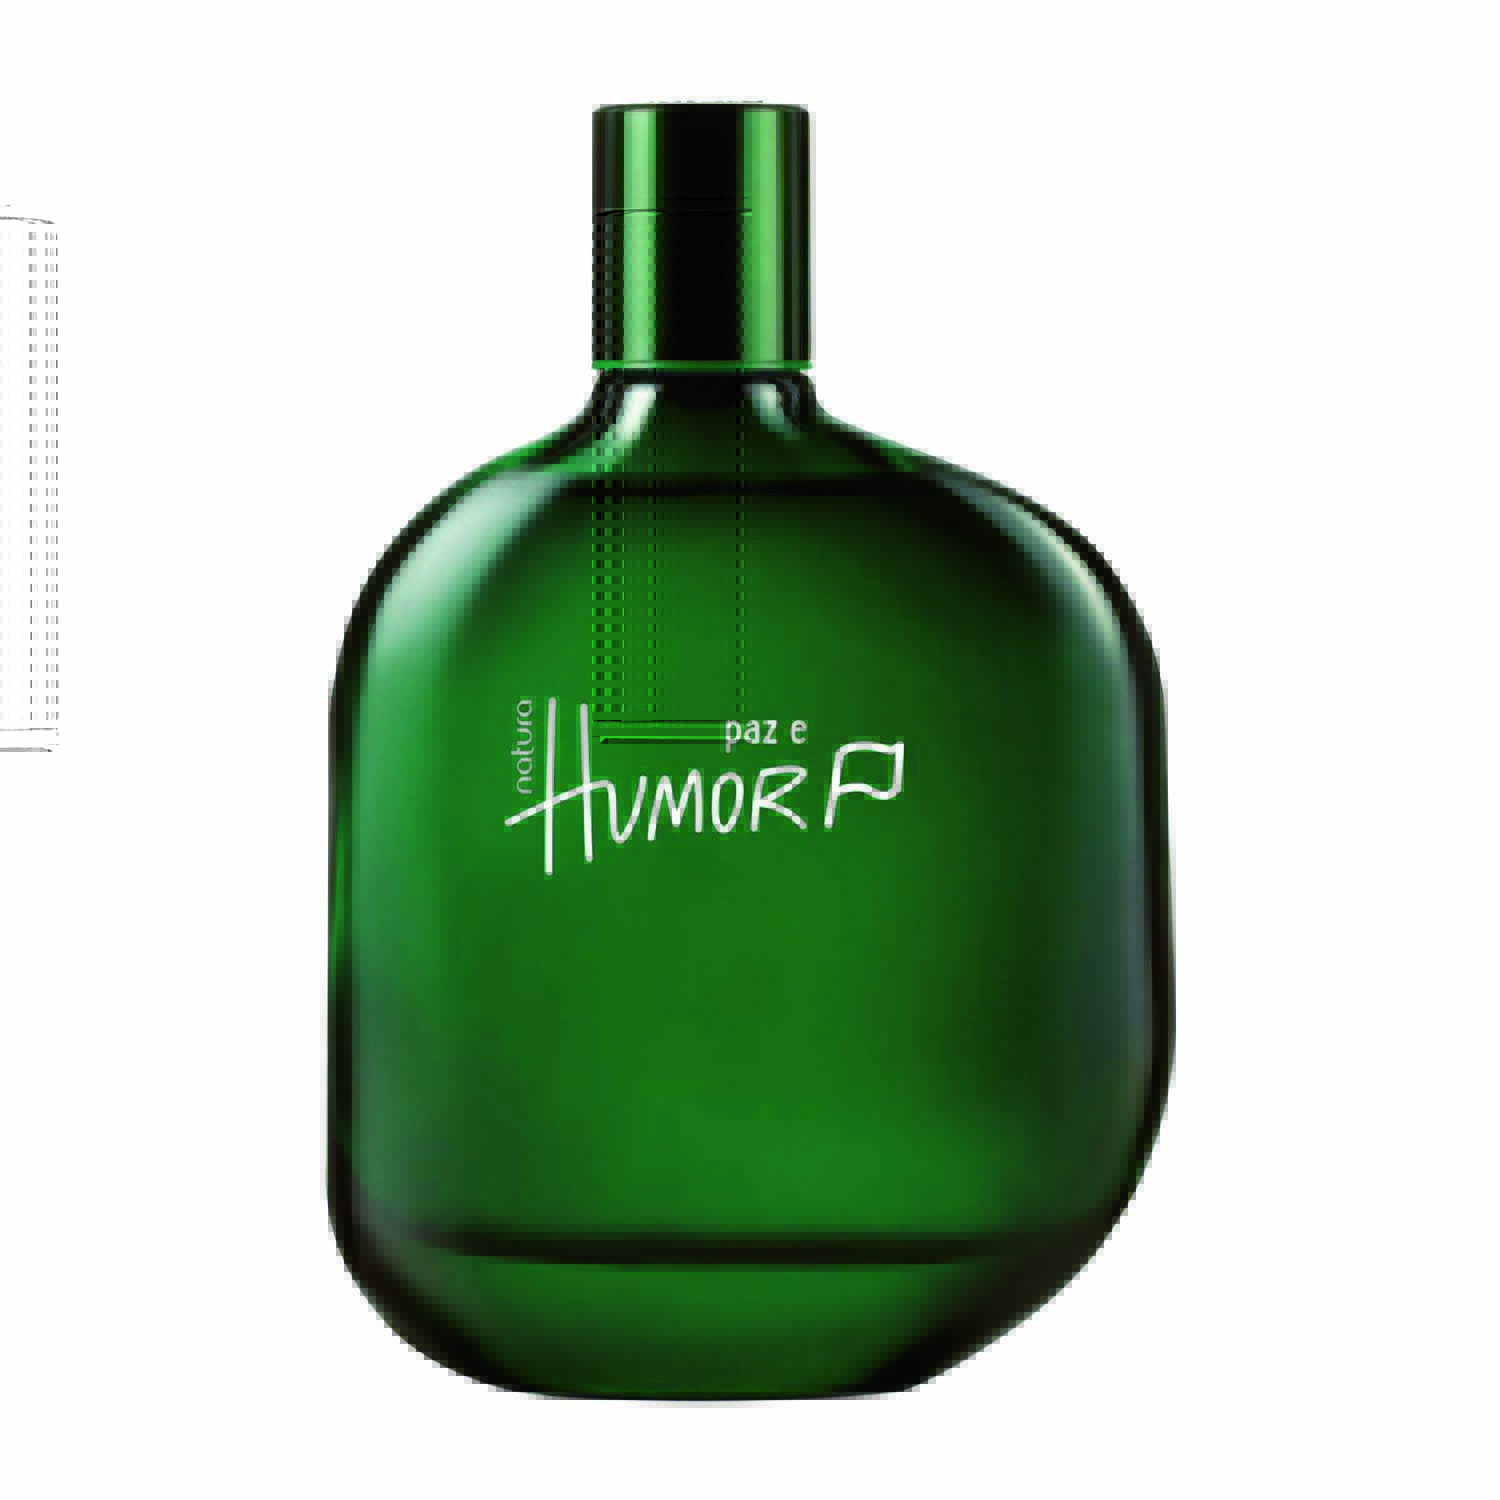 Perfume em frasco verde oliva